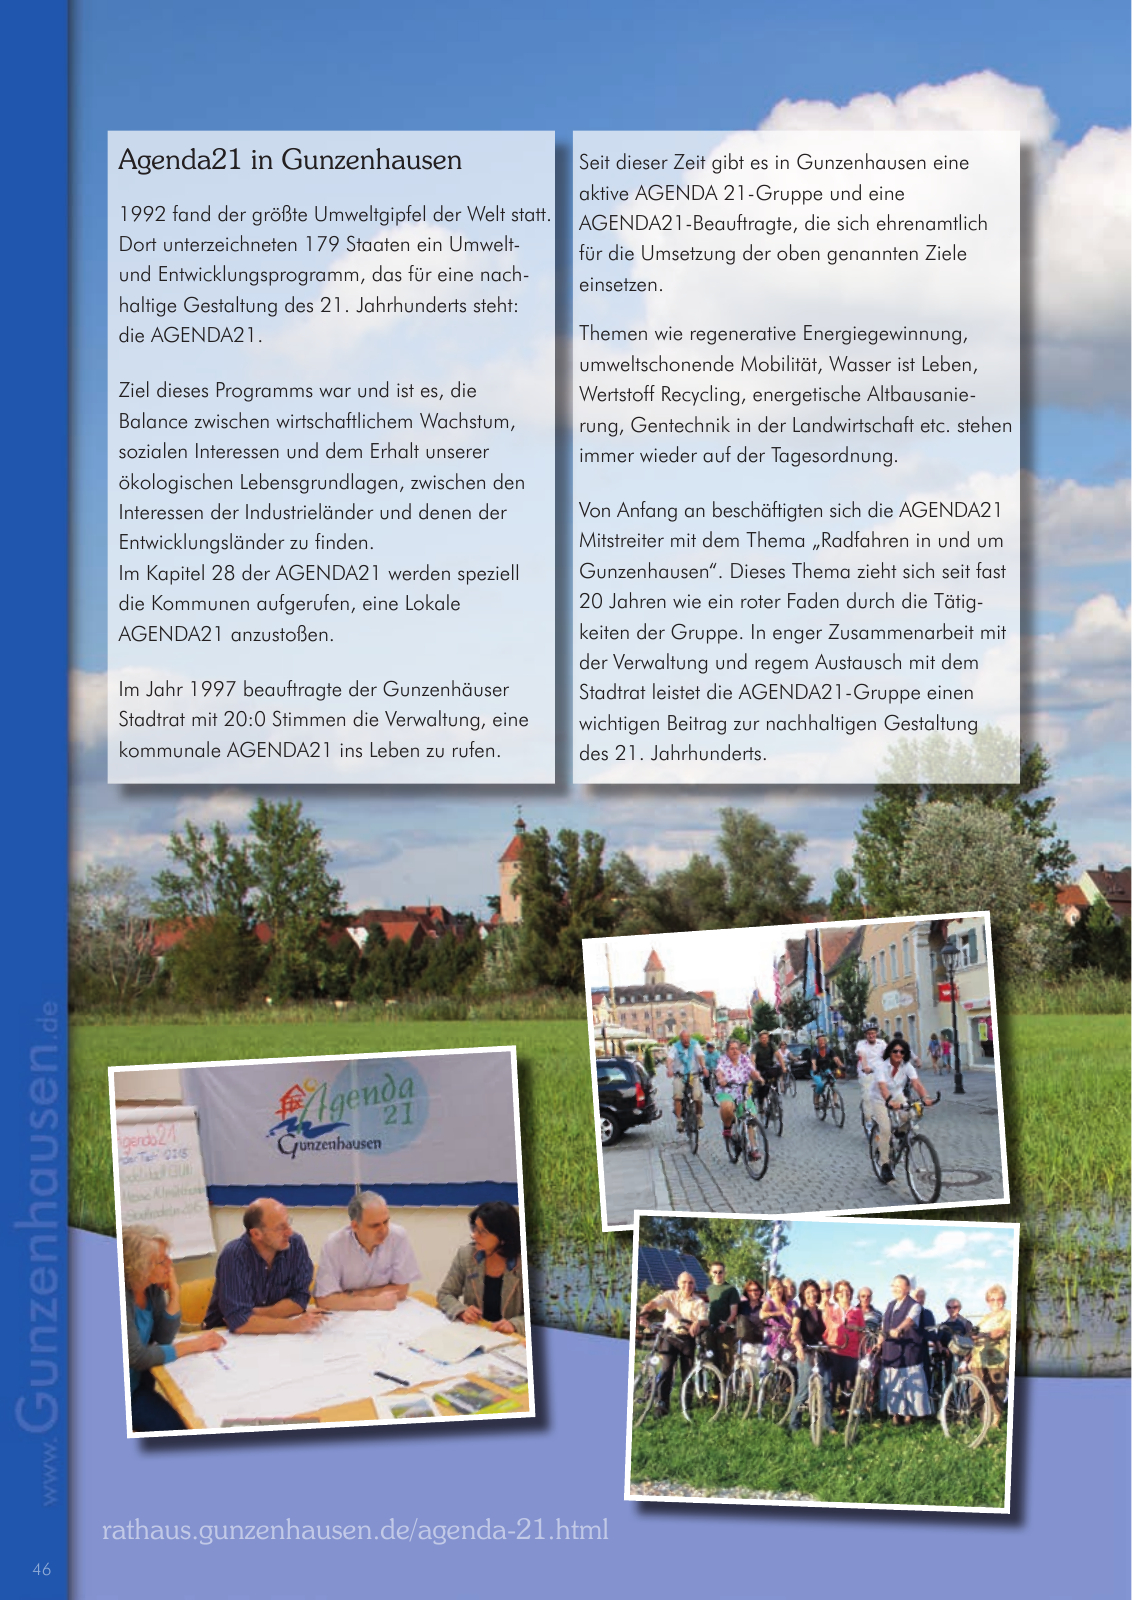 Vorschau leben & arbeiten in Gunzenhausen - 2015 Seite 46